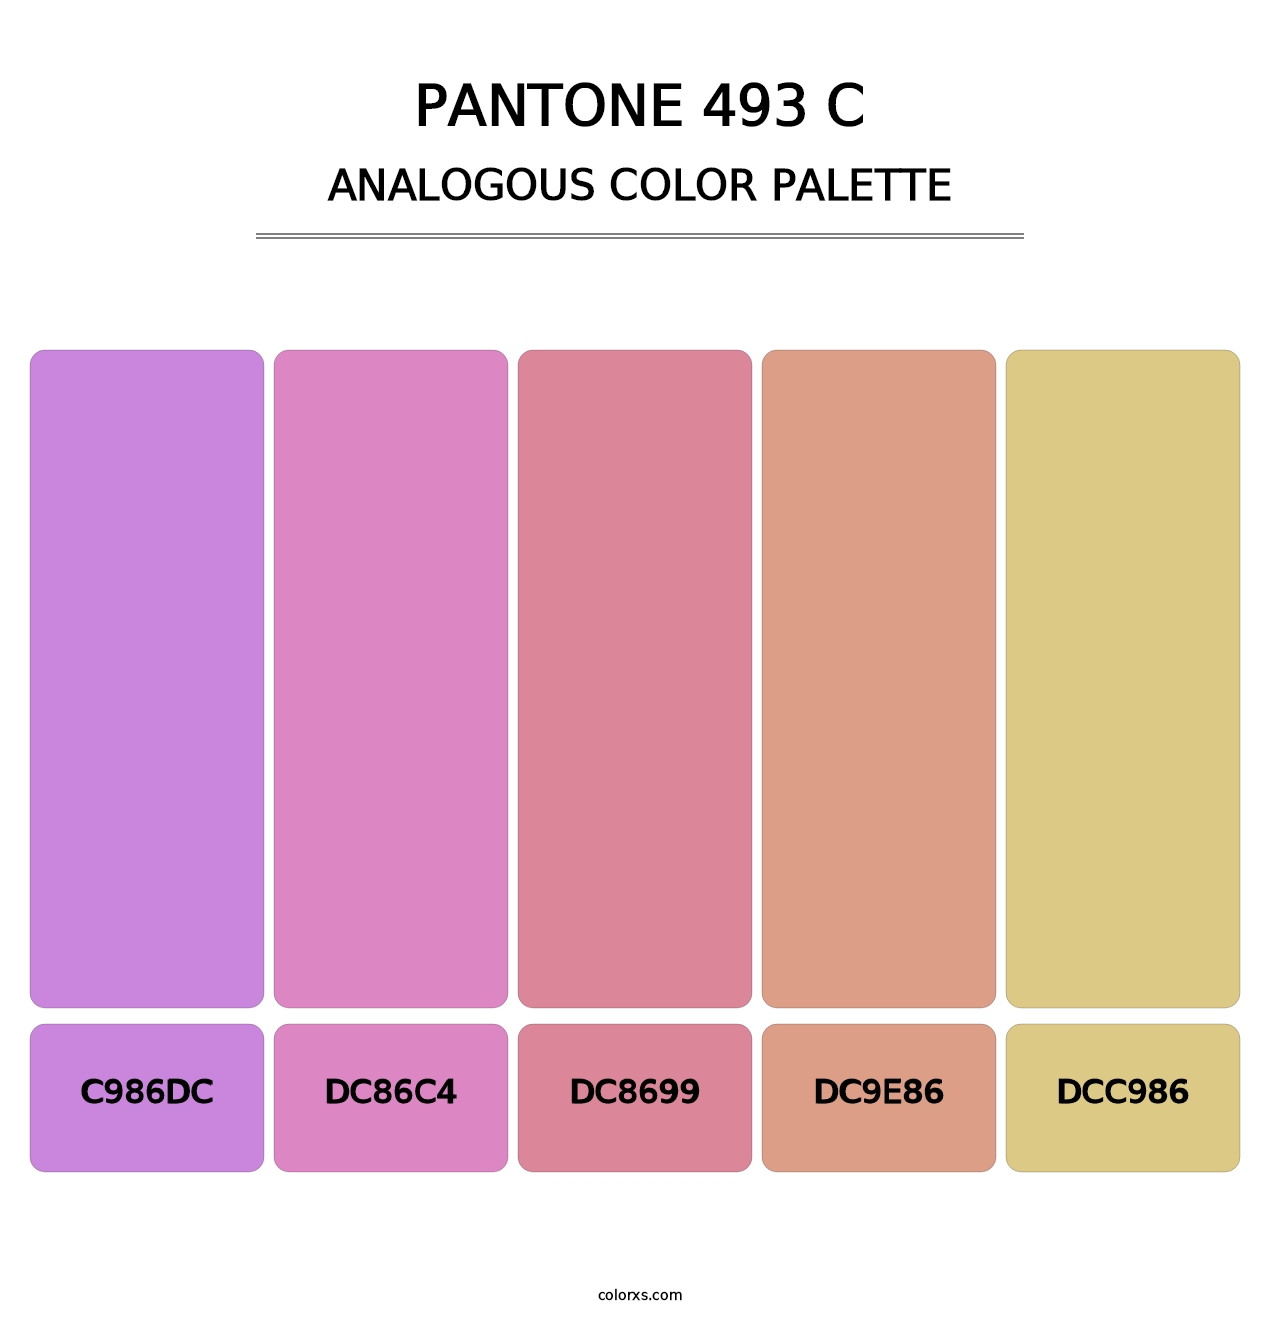 PANTONE 493 C - Analogous Color Palette